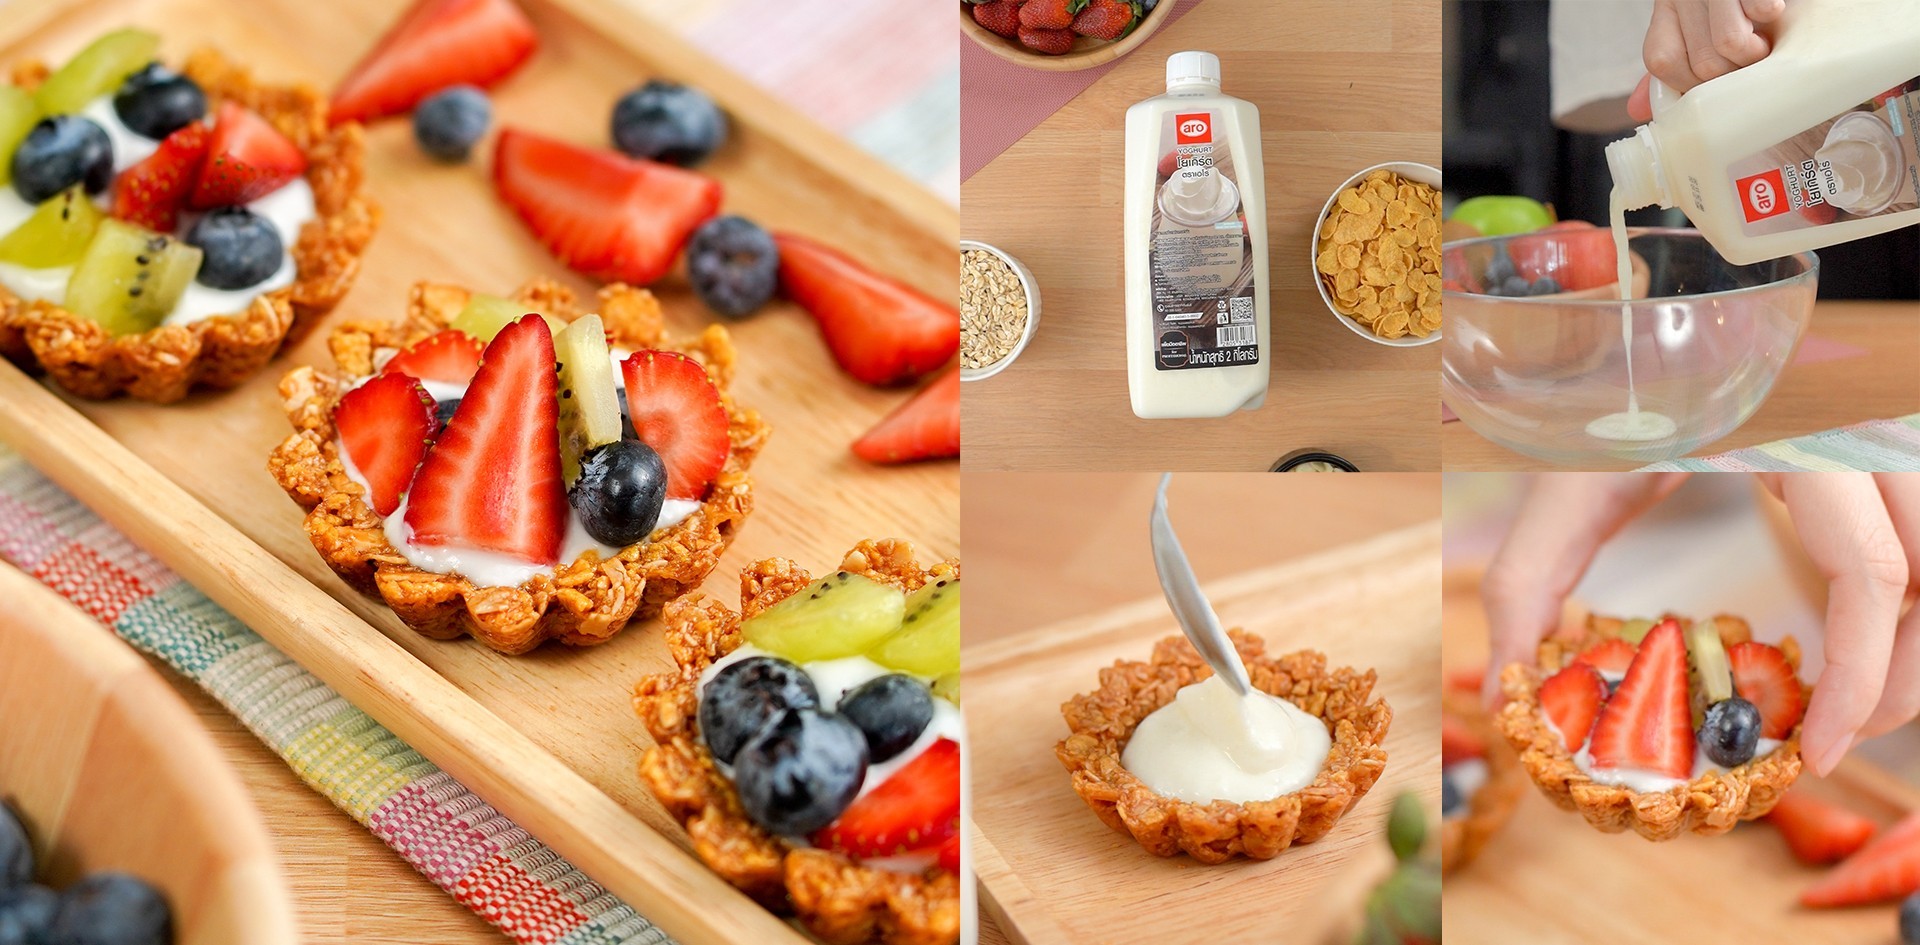 วิธีทำ “granola fruit tart” เมนูเพื่อสุขภาพ ทำง่าย แถมได้ประโยชน์ เมนูอาหารว่าง